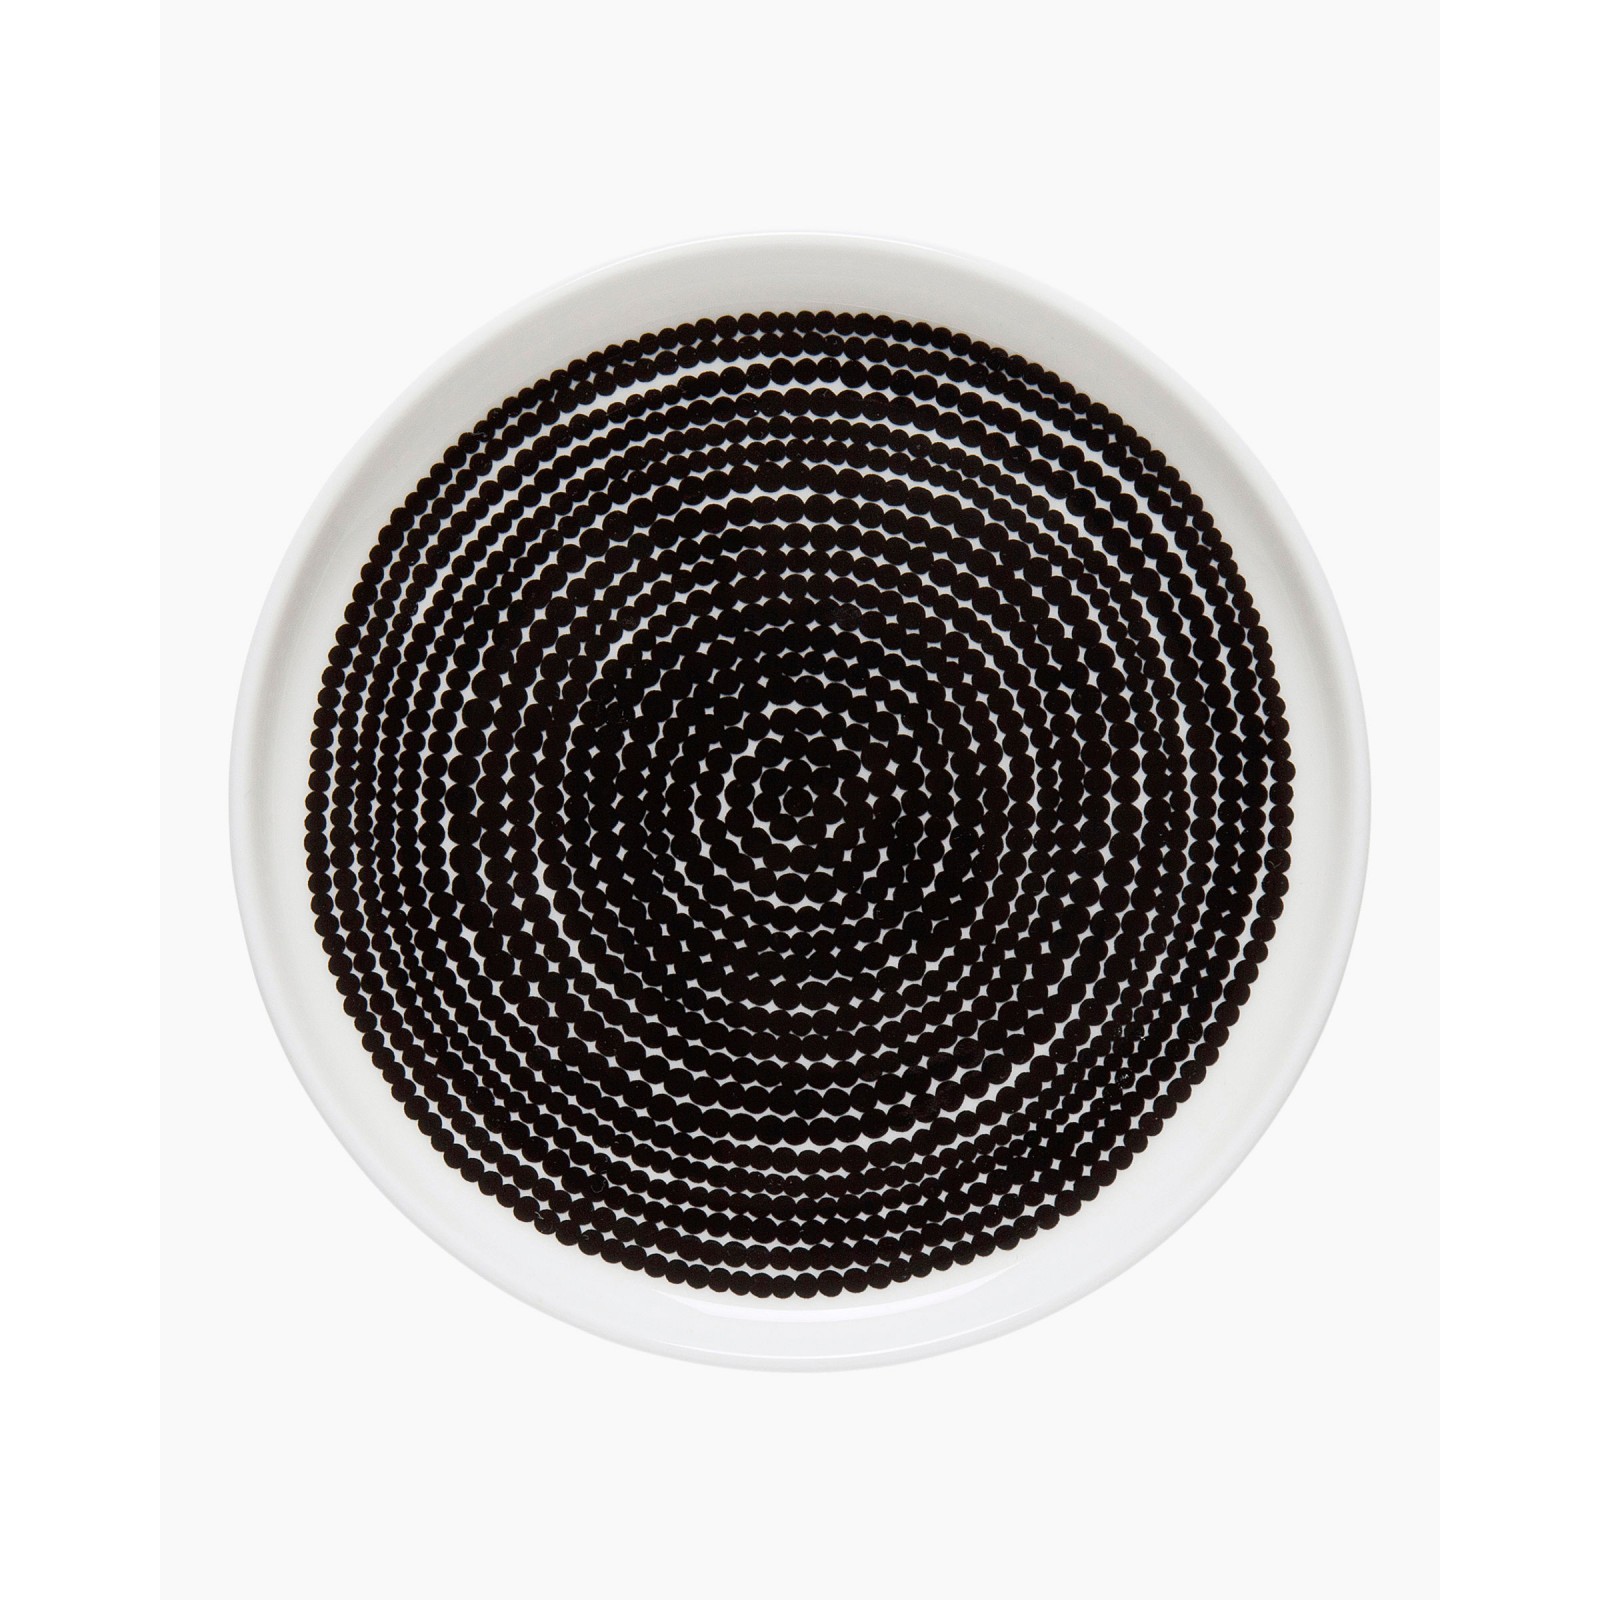 Marimekko Rasymatto Plate 13,5cm black